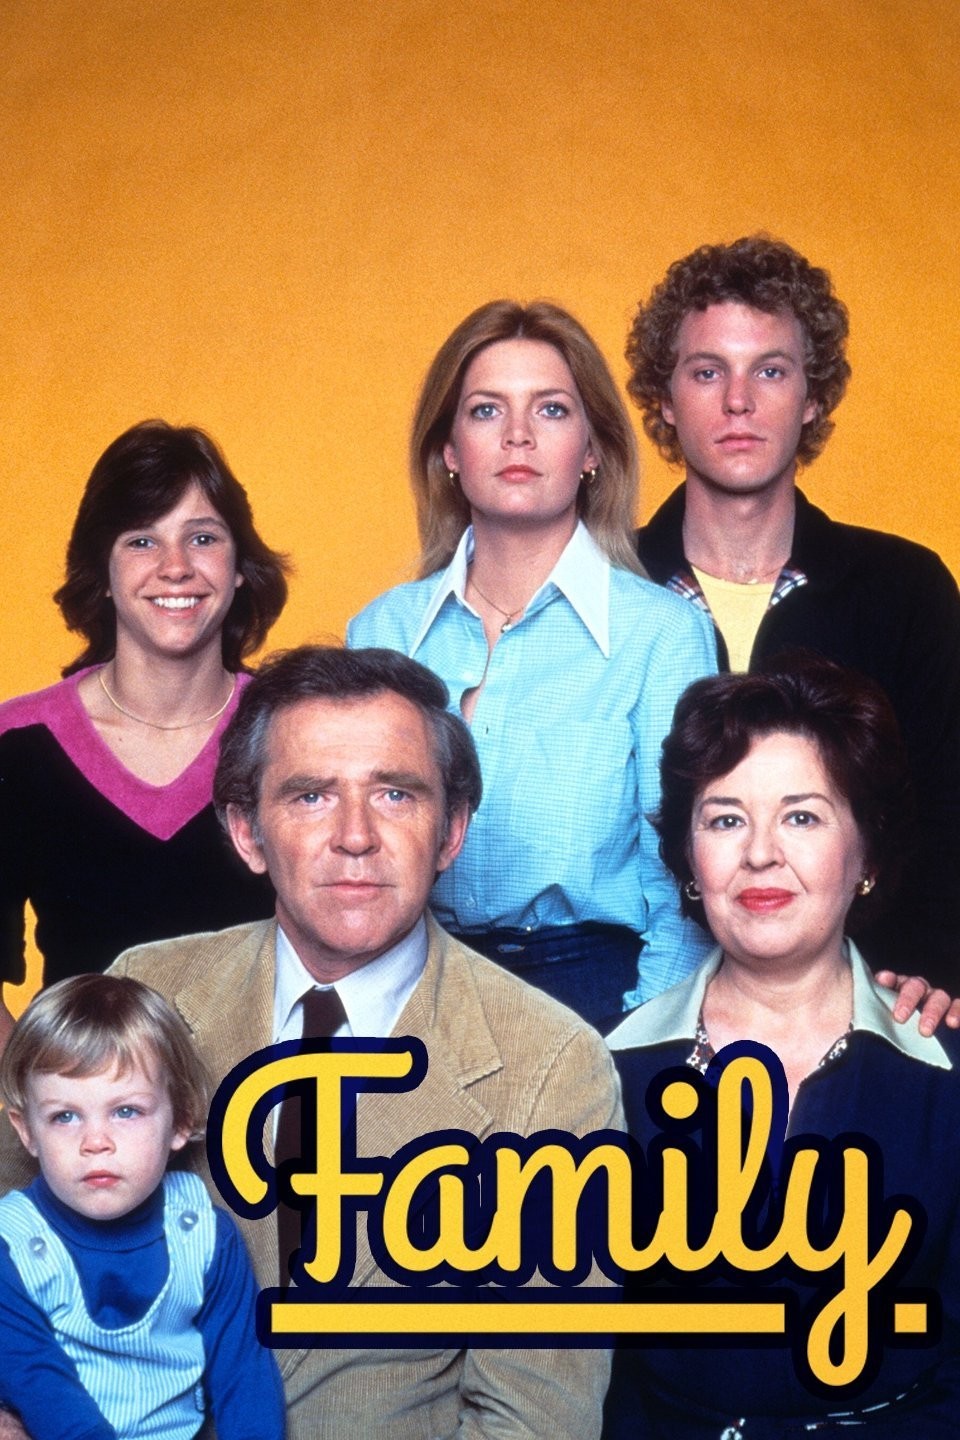 Family - Cast Poster
Keywords: family_img;family_media;media_poster